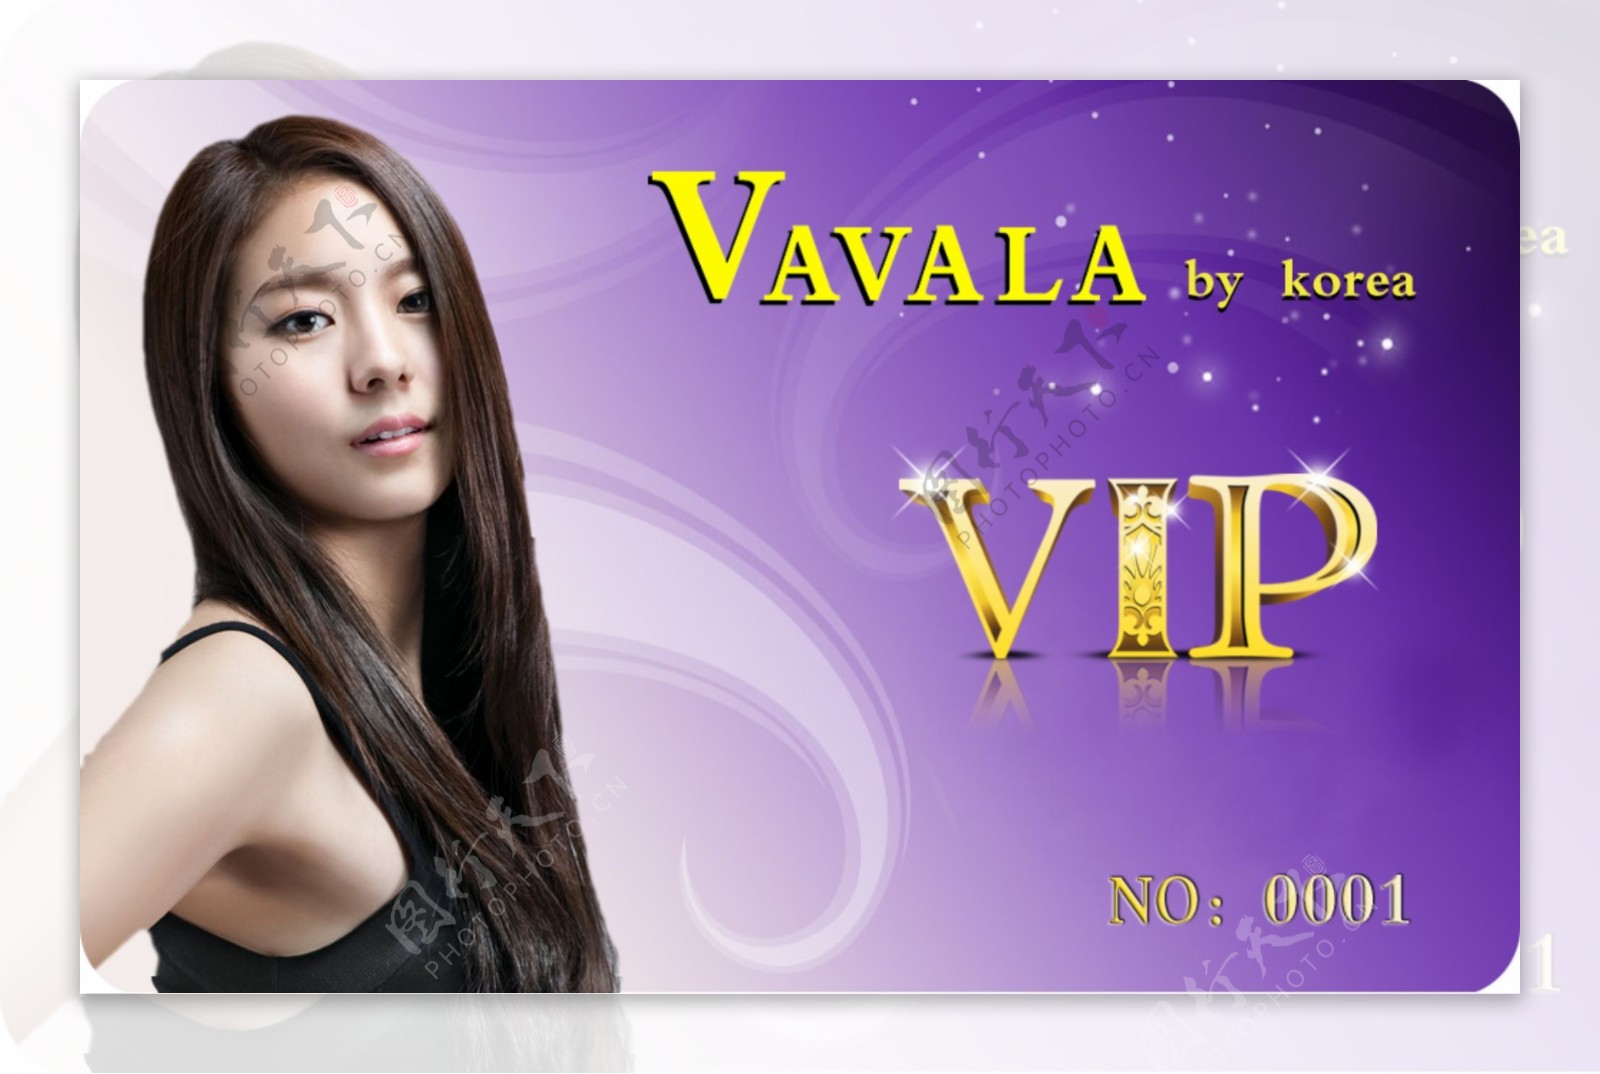 韩国时装店VIP卡图片